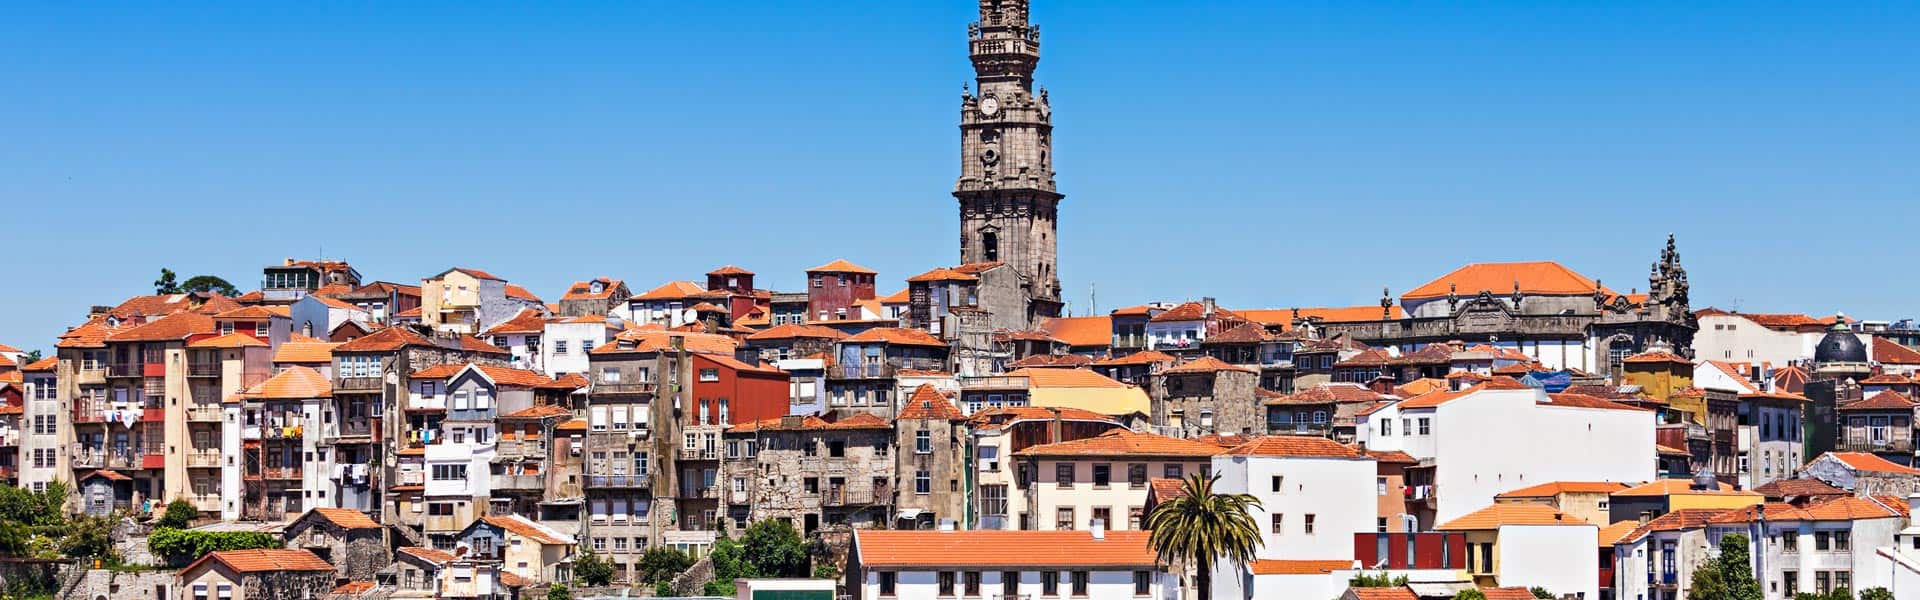 Überragend schön: Besuchen sie den Porto Torre dos Clérigos